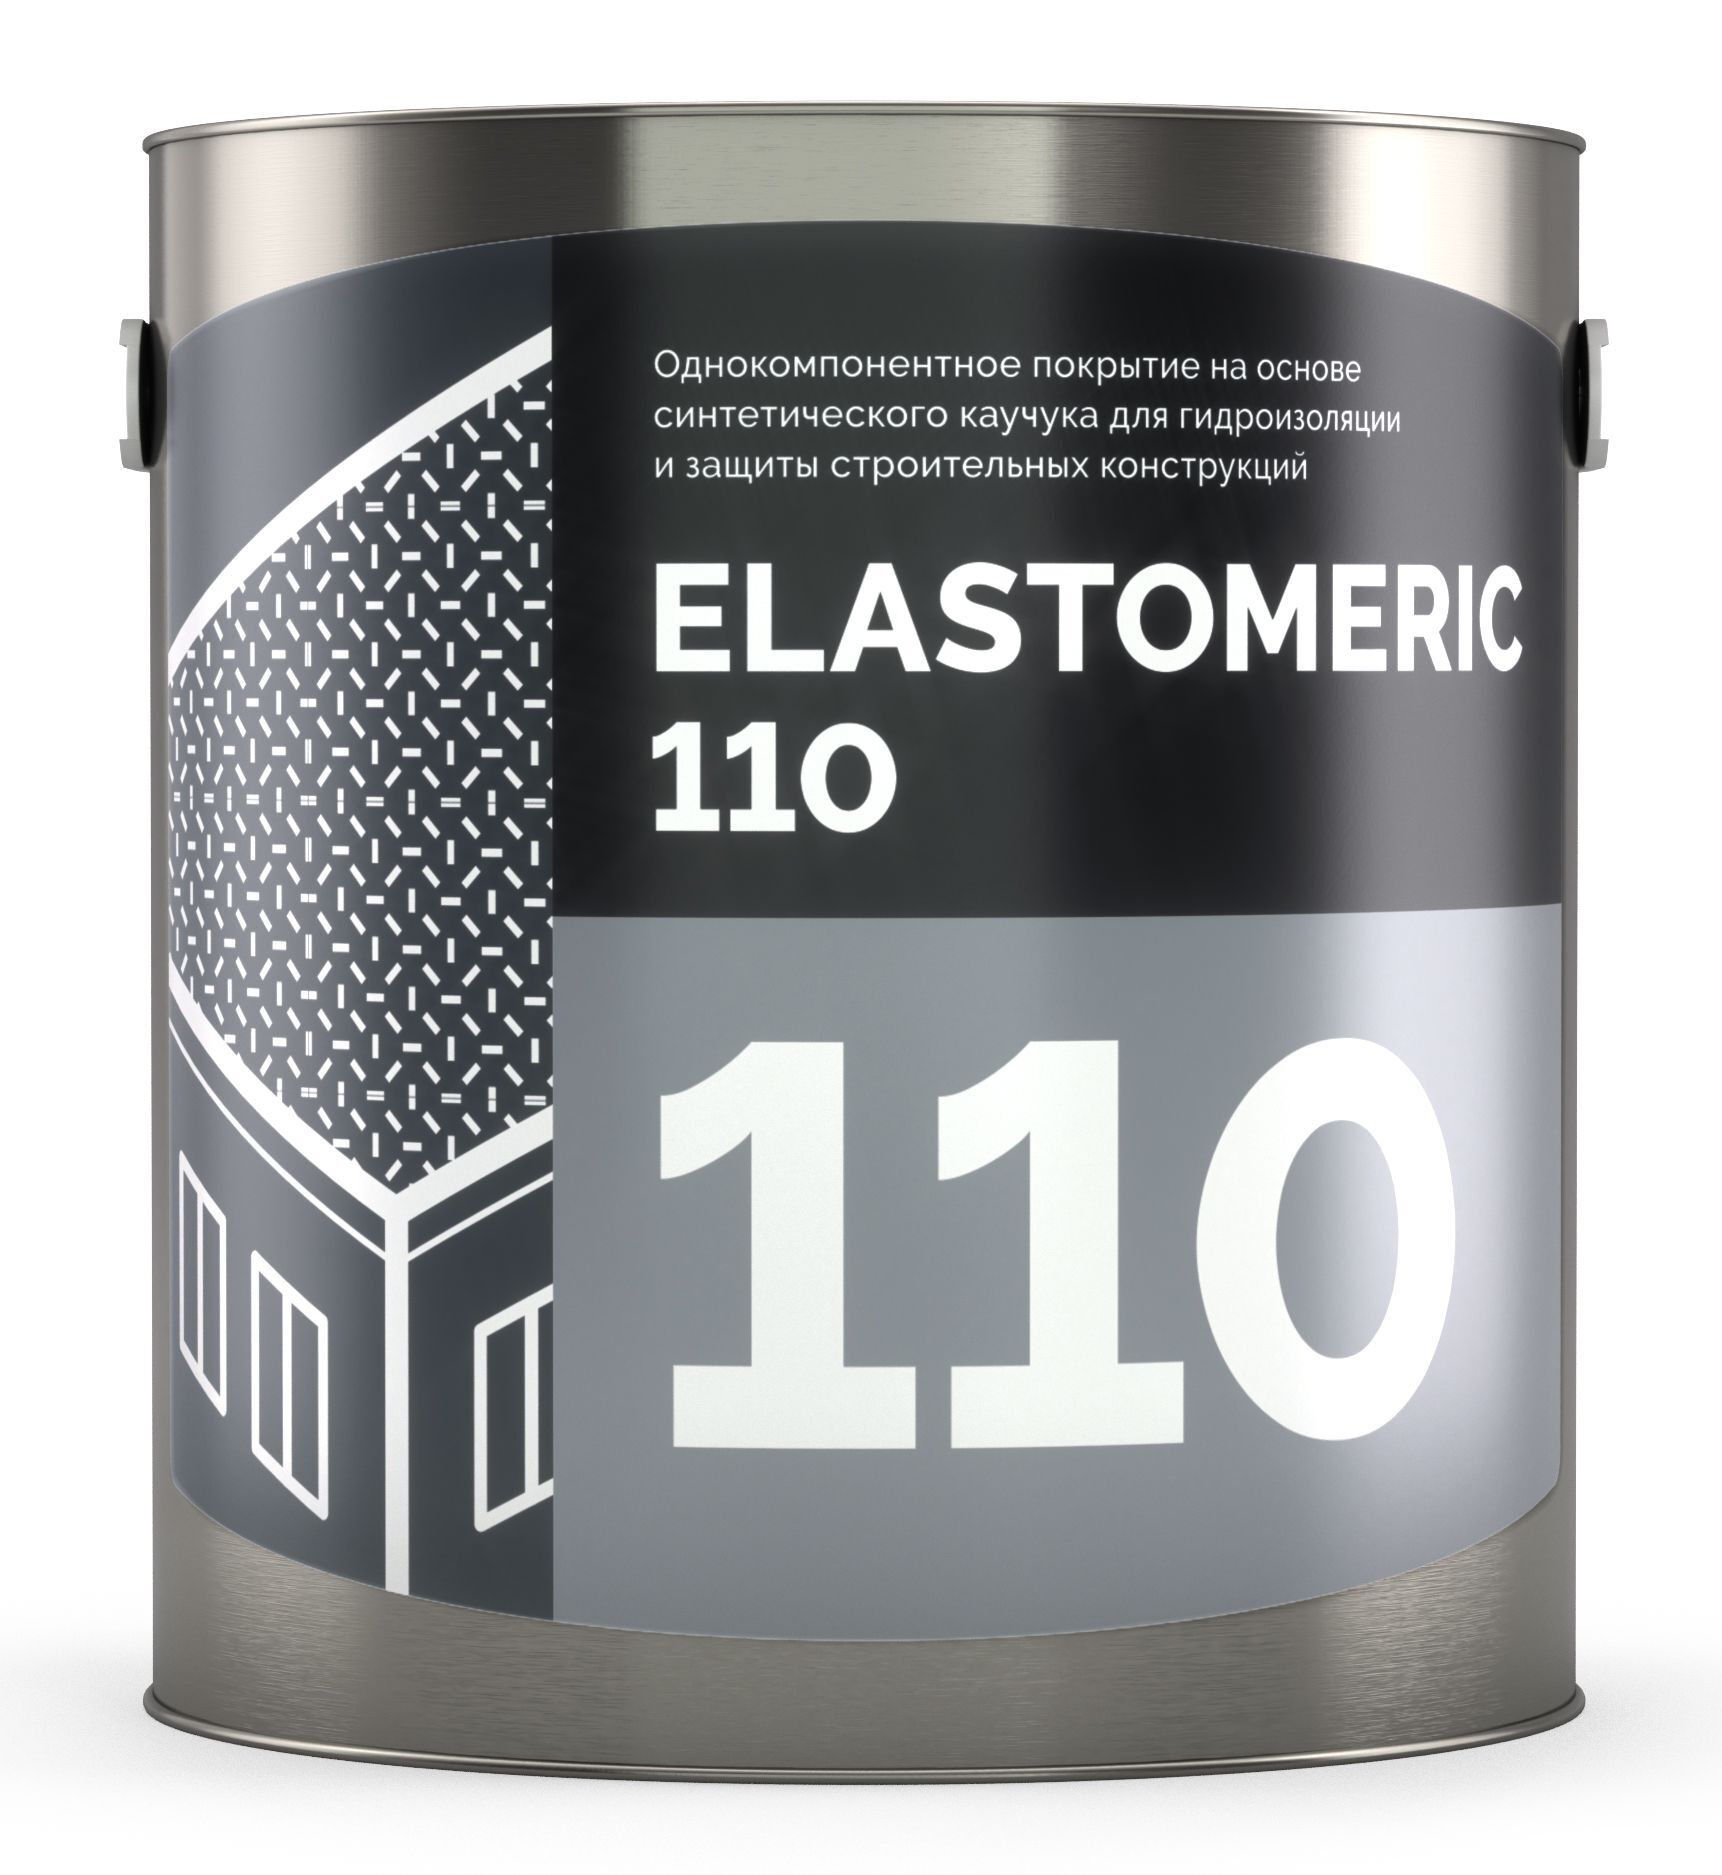 Базовая гидроизоляционная мастика на основе синтетических каучуков - ELASTOMERIC 110 3 кг Белый